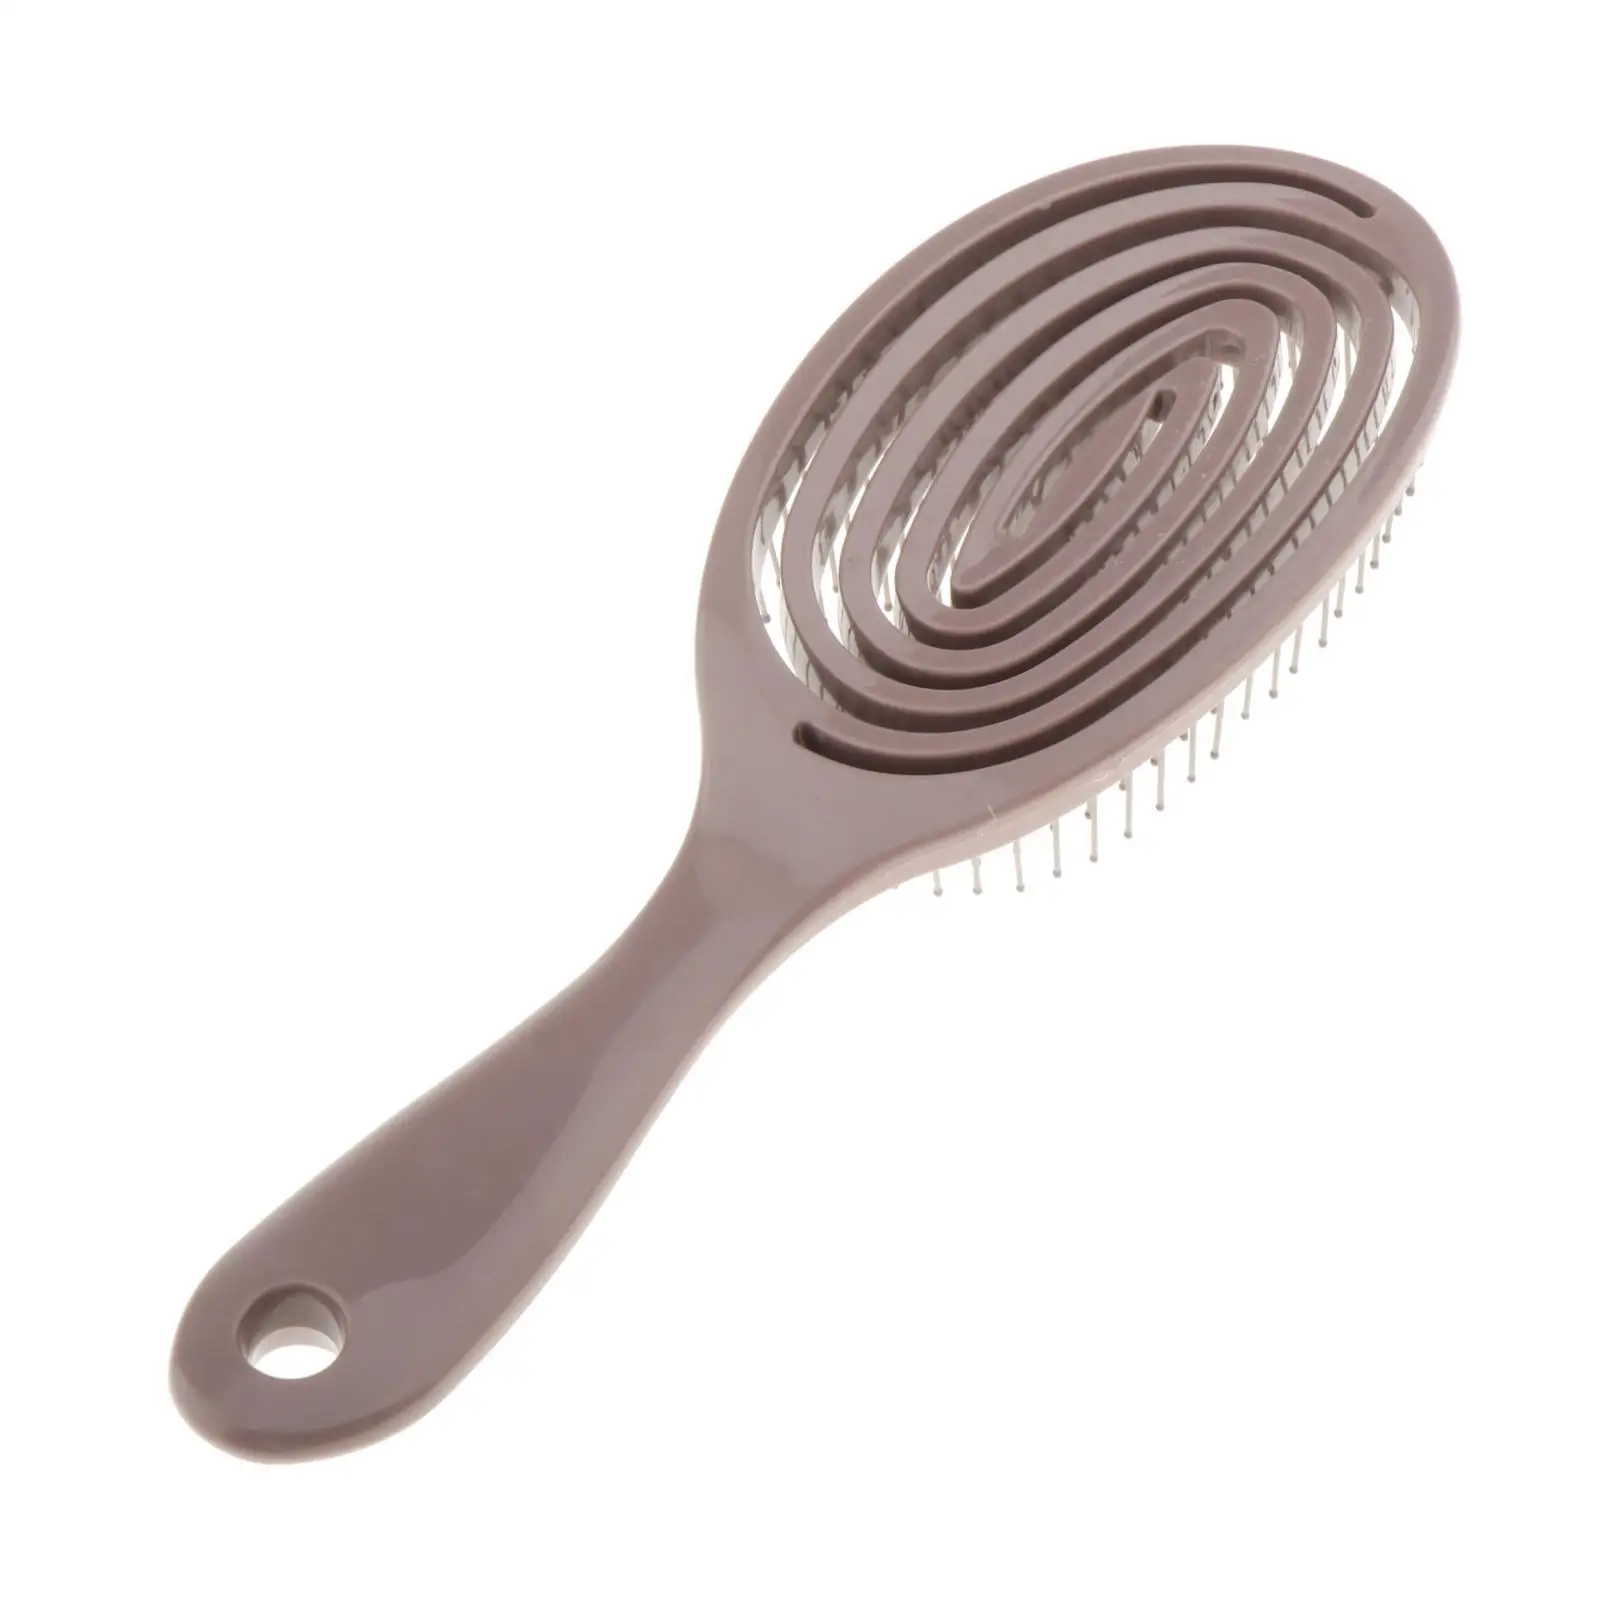 2 Hair Brush Scalp Massage for Curly Wet Straight Men Women Natural